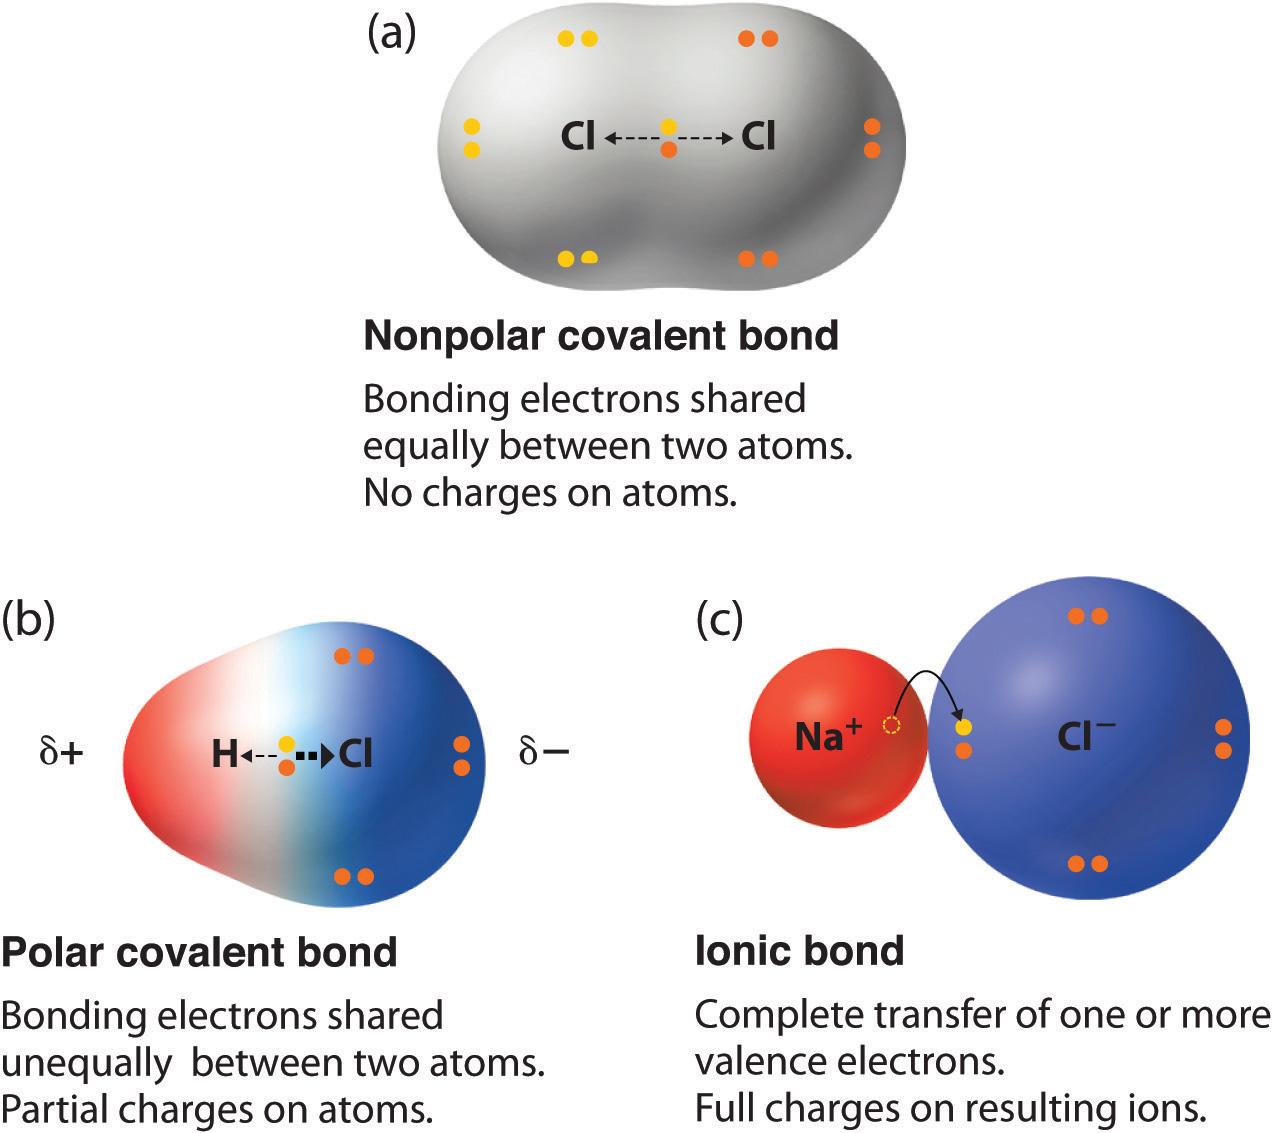 Polar Covalent Bond